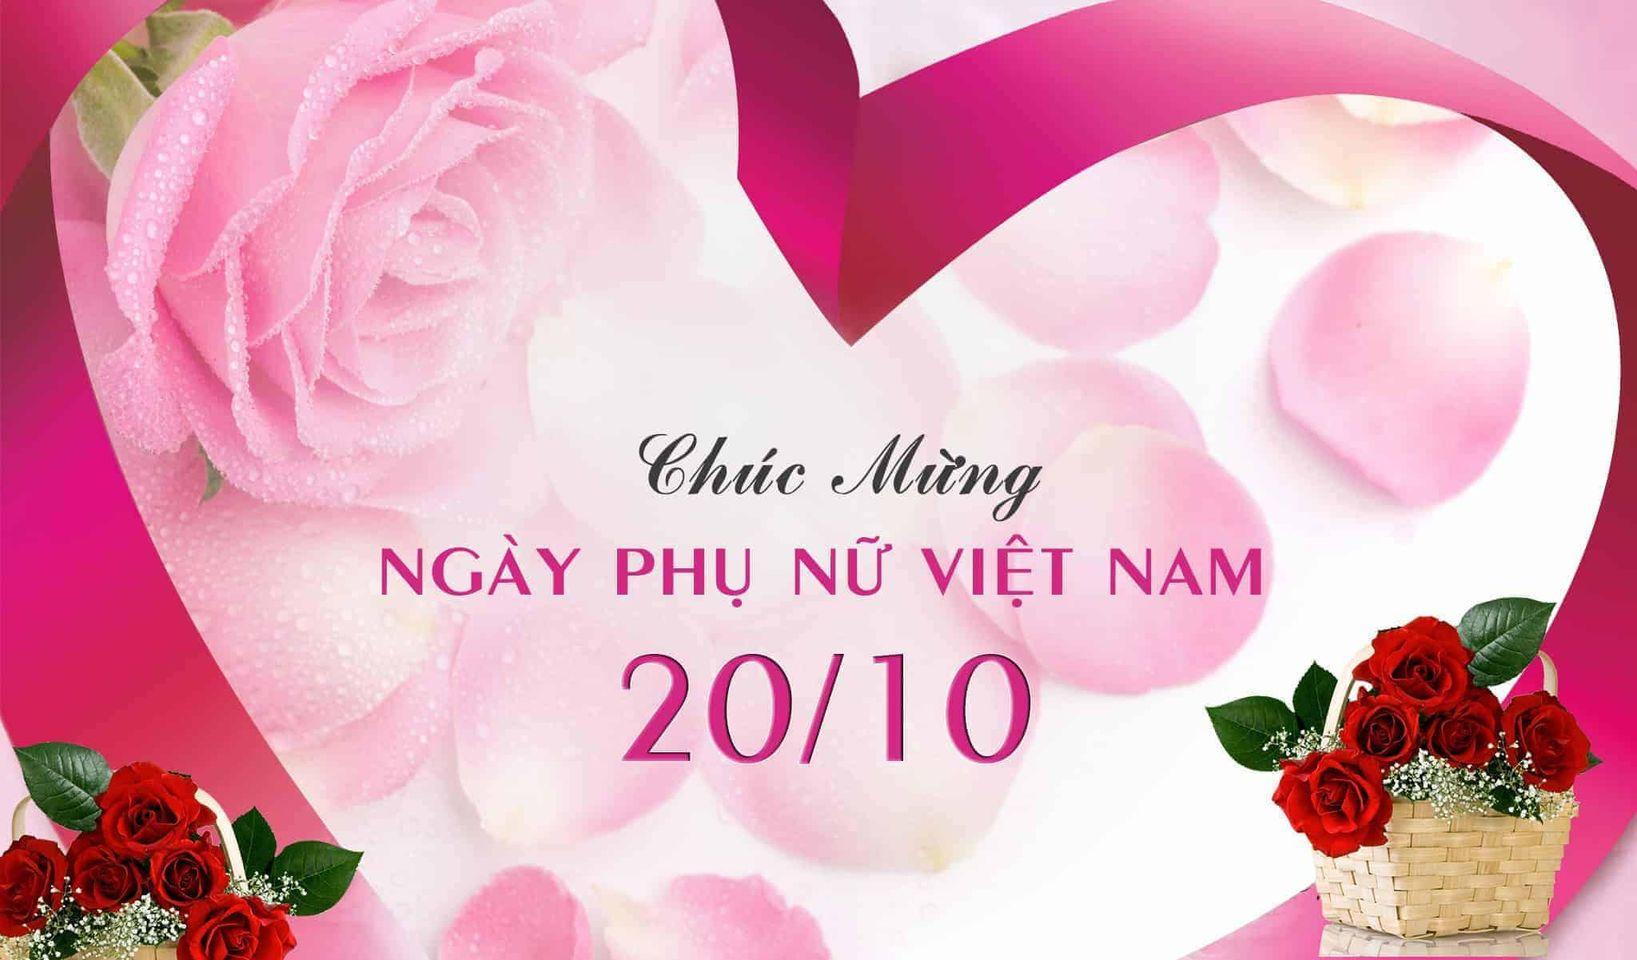 Trong ngày Phụ Nữ Việt Nam, hãy cùng ngắm nhìn những hình ảnh xúc động về tình yêu thương và sự kiên trì của các bà, các mẹ, các chị và các em gái. Cùng chúc mừng những người phụ nữ tuyệt vời này và nhận ra giá trị của họ trong cuộc sống của chúng ta.